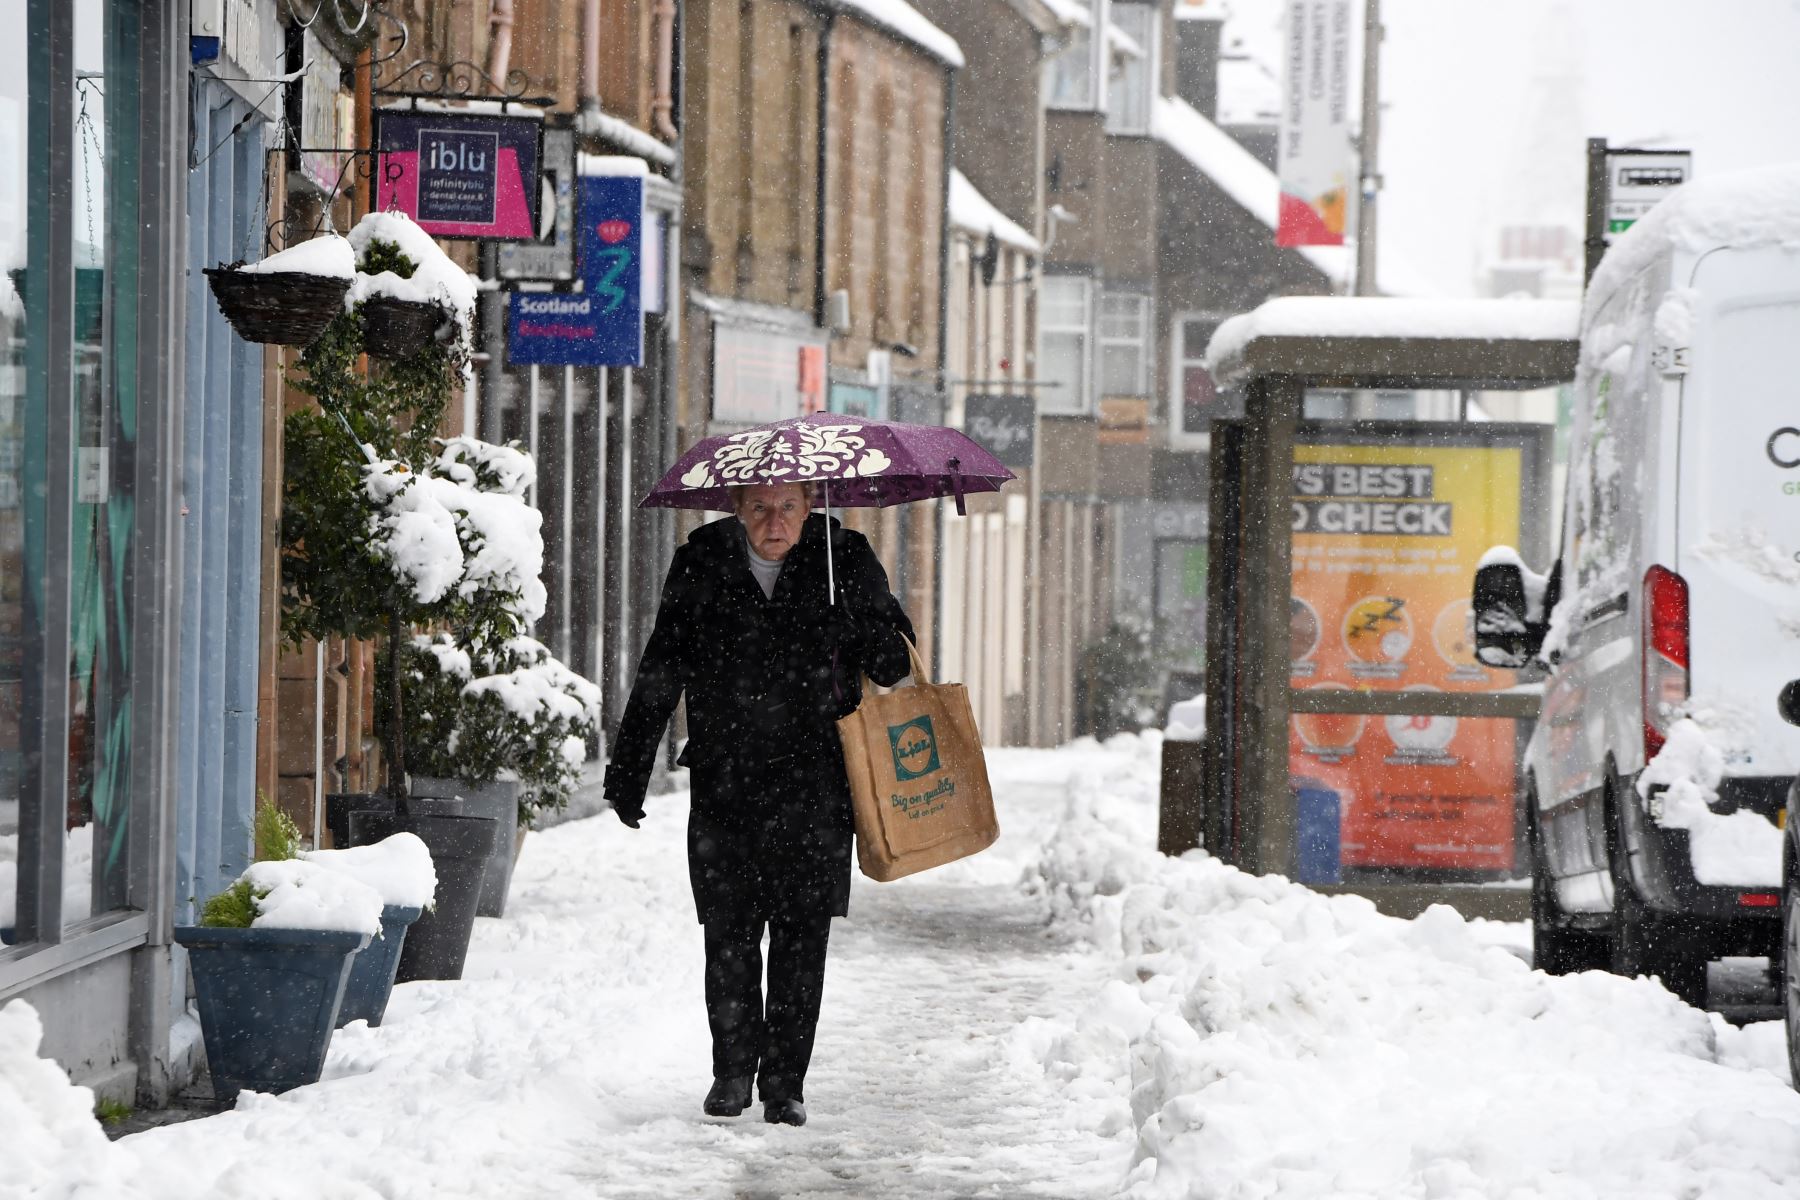 Los peatones caminan por aceras cubiertas de nieve en Auchterarder mientras nevaba intensamente en partes de Escocia.
Foto: AFP